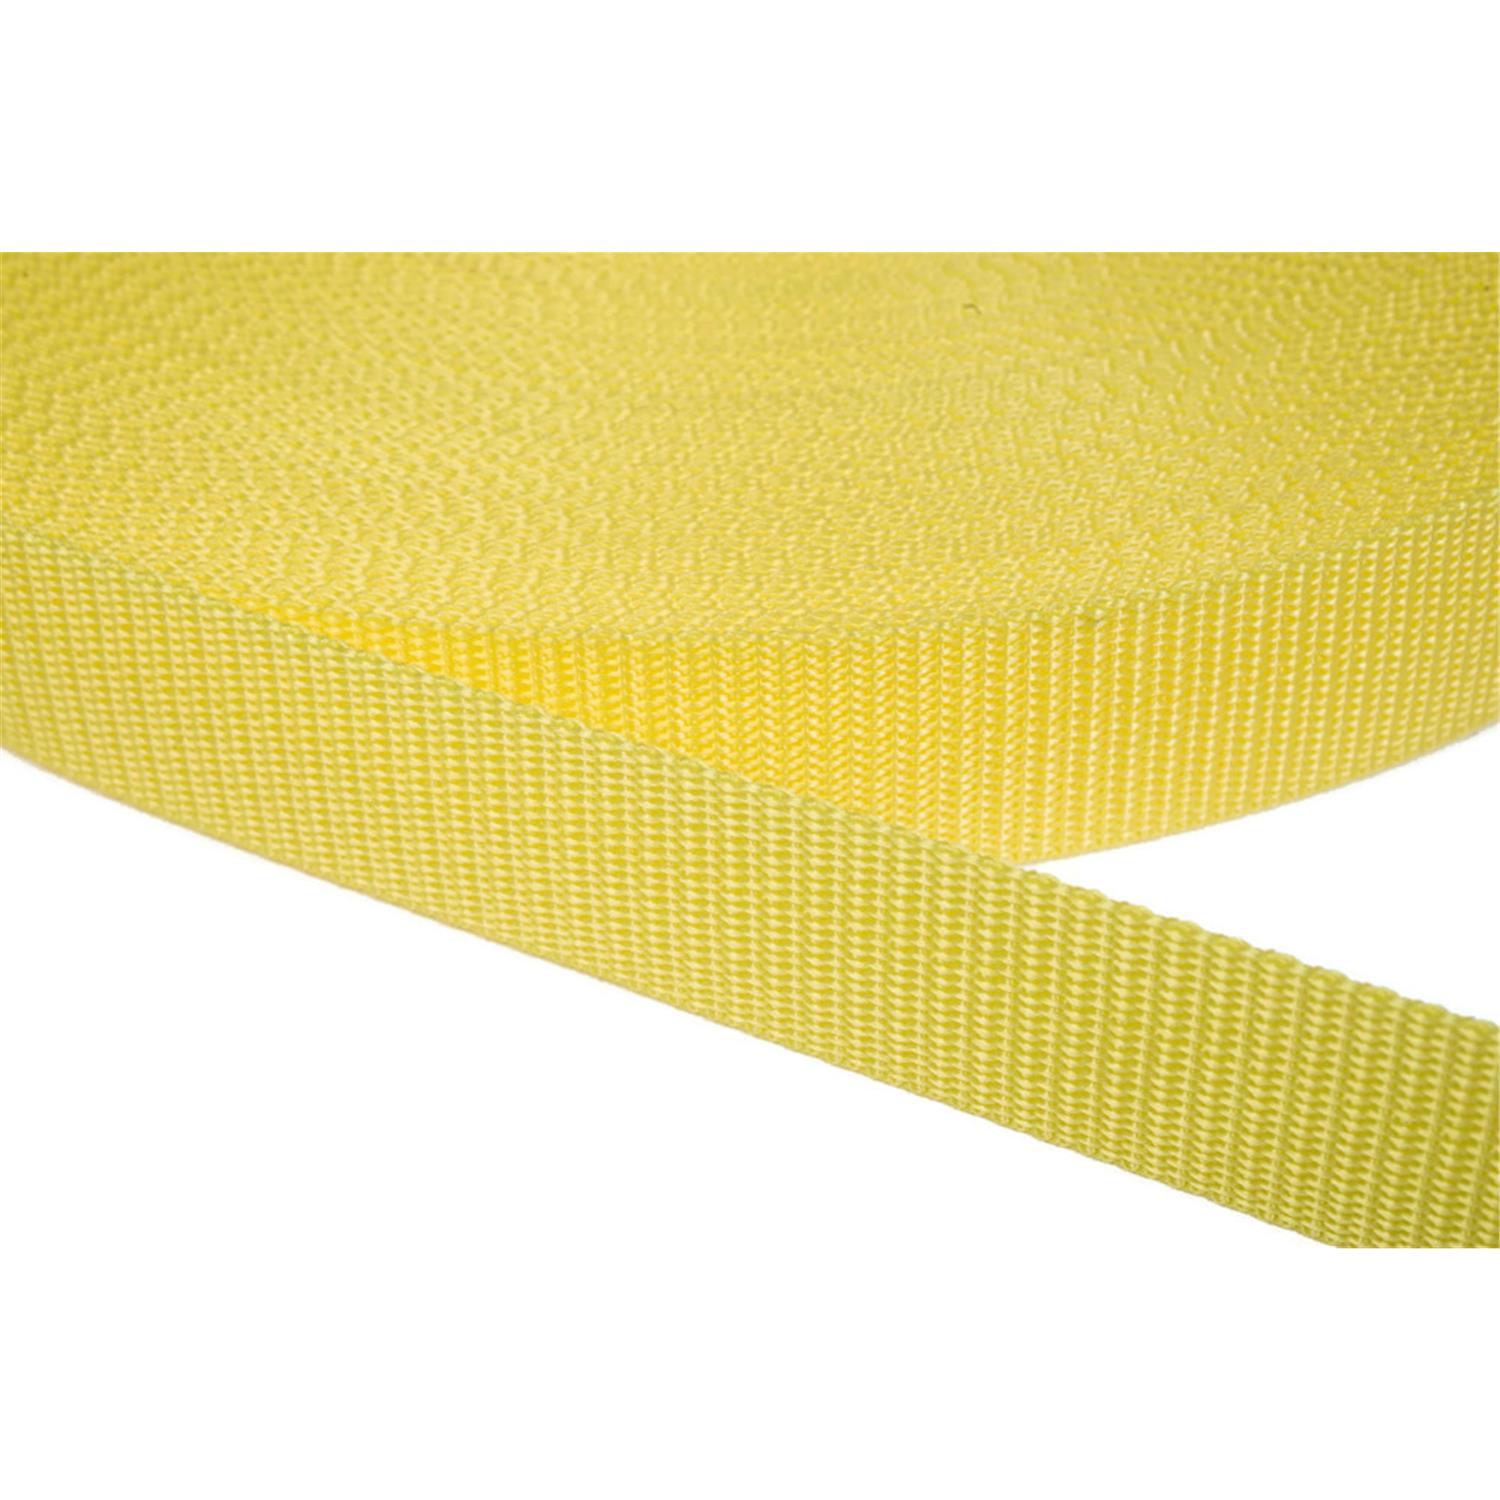 Gurtband 20mm breit aus Polypropylen in 41 Farben 09 - zitronengelb 06 Meter